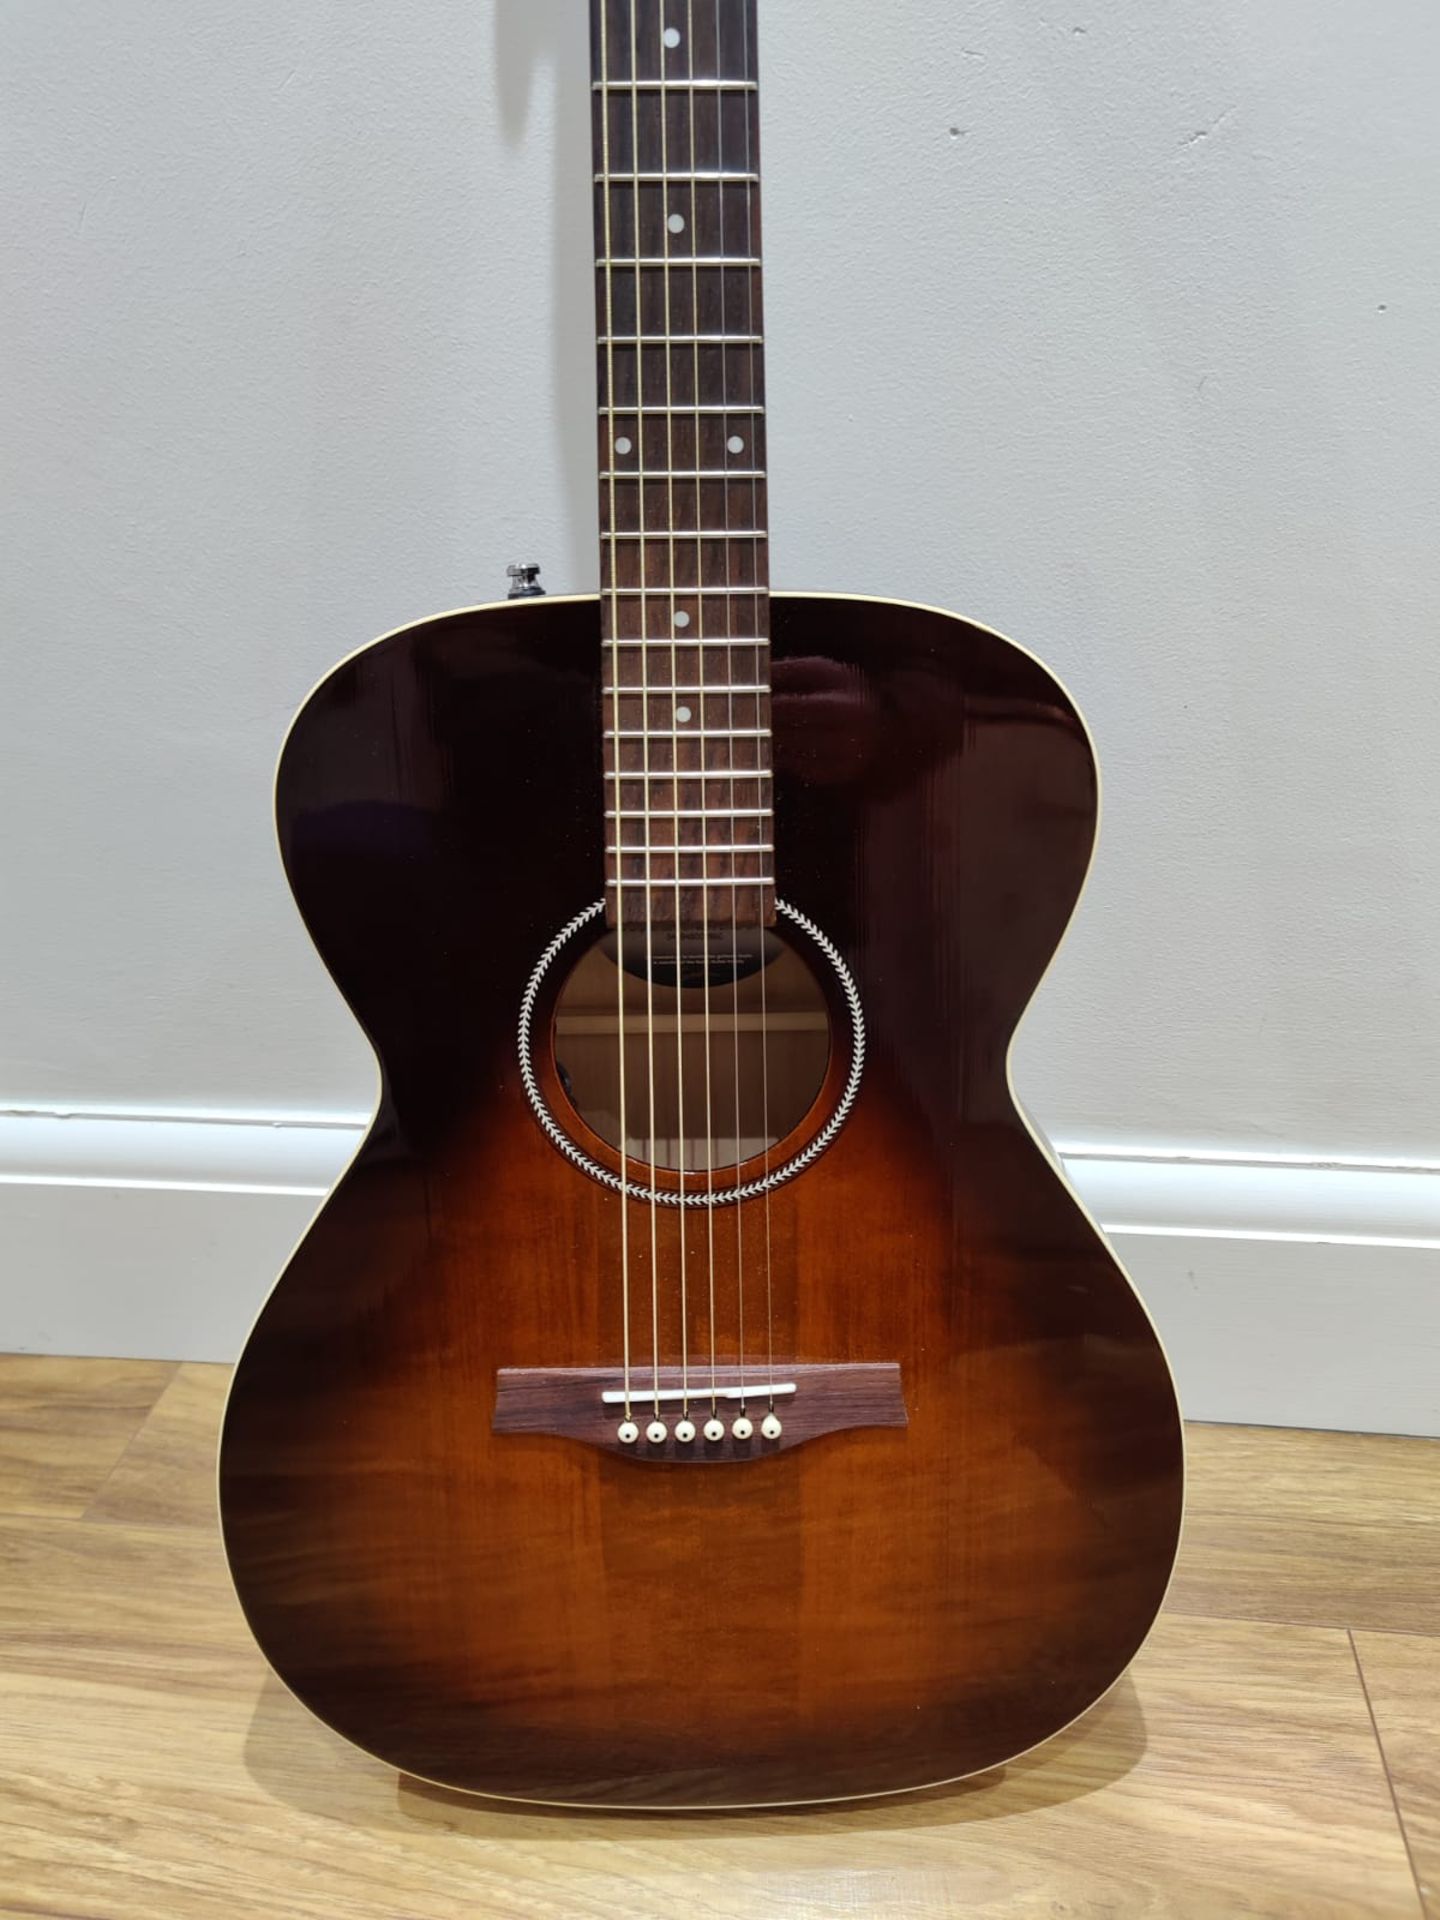 1 x Seagull S6 Original Slim Burnt Umber Dreadnaught Electro Acoustic Guitar - RRP £600 - Very - Image 12 of 14